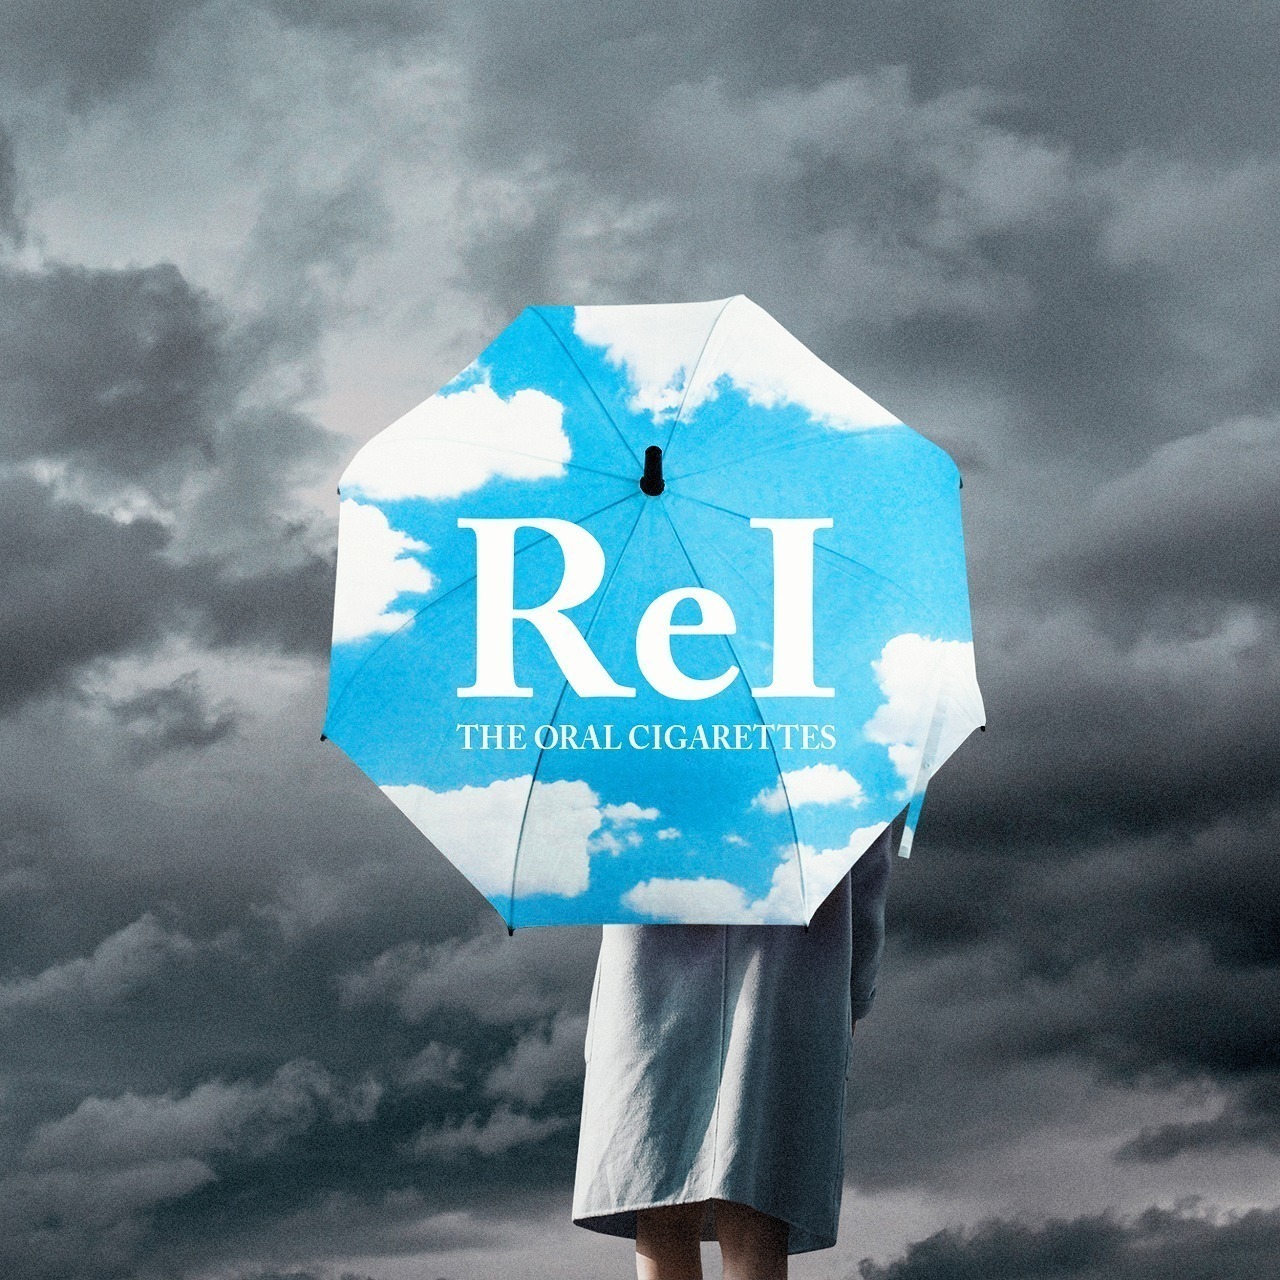 THE ORAL CIGARETTESが描いておかなければならなかった新曲“ReI”という光について - 『ReI』